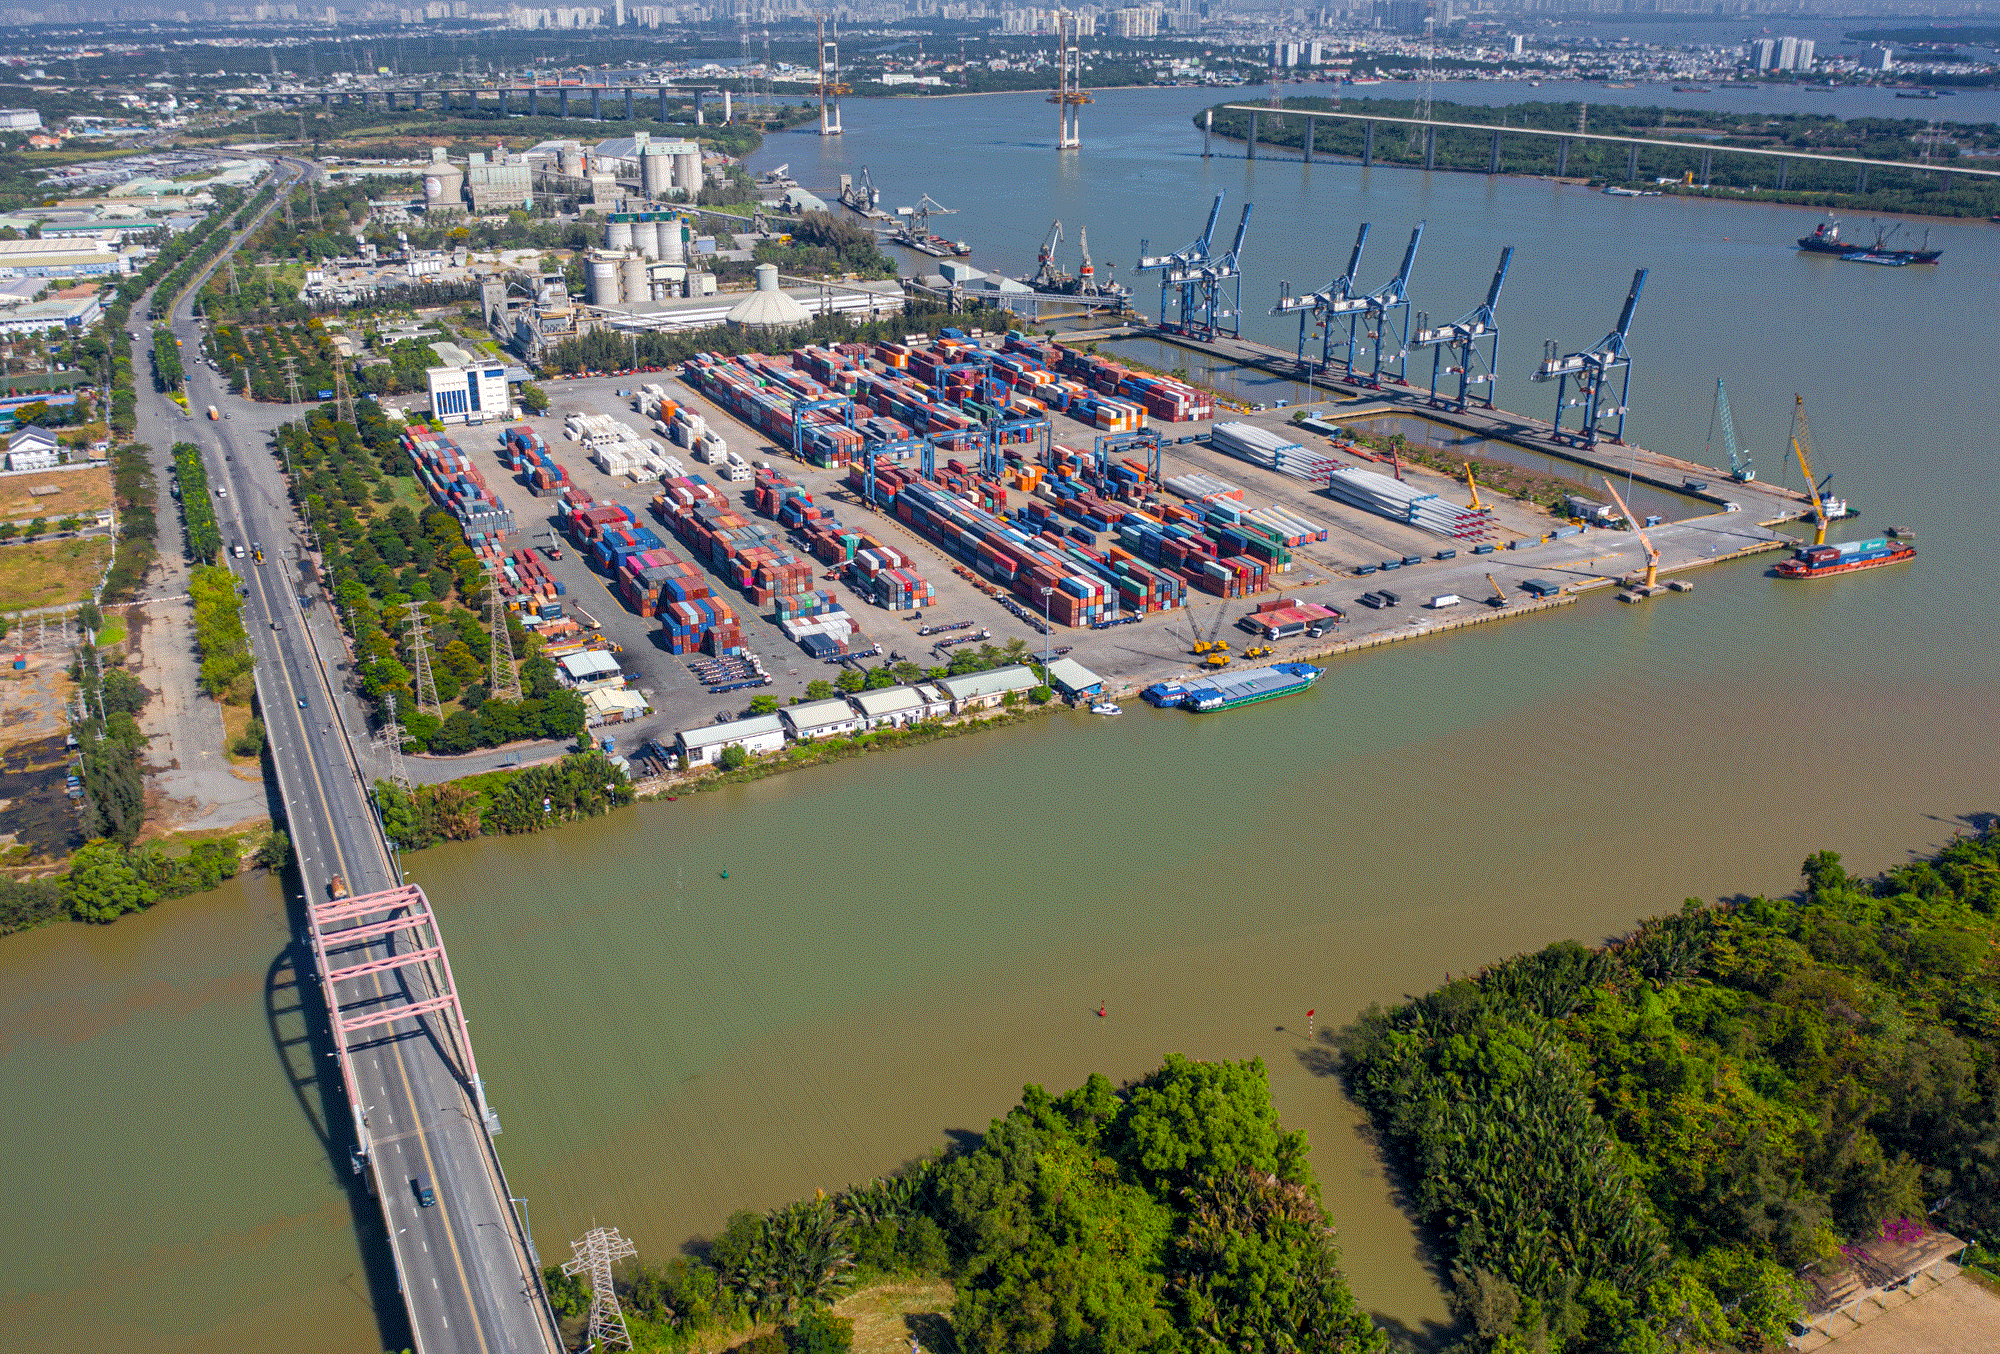 ‏K‏‏hu công nghiệp ‏‏có đến 3 cảng quốc tế, rộng nhất ‏‏TP. HCM - Ảnh 10.